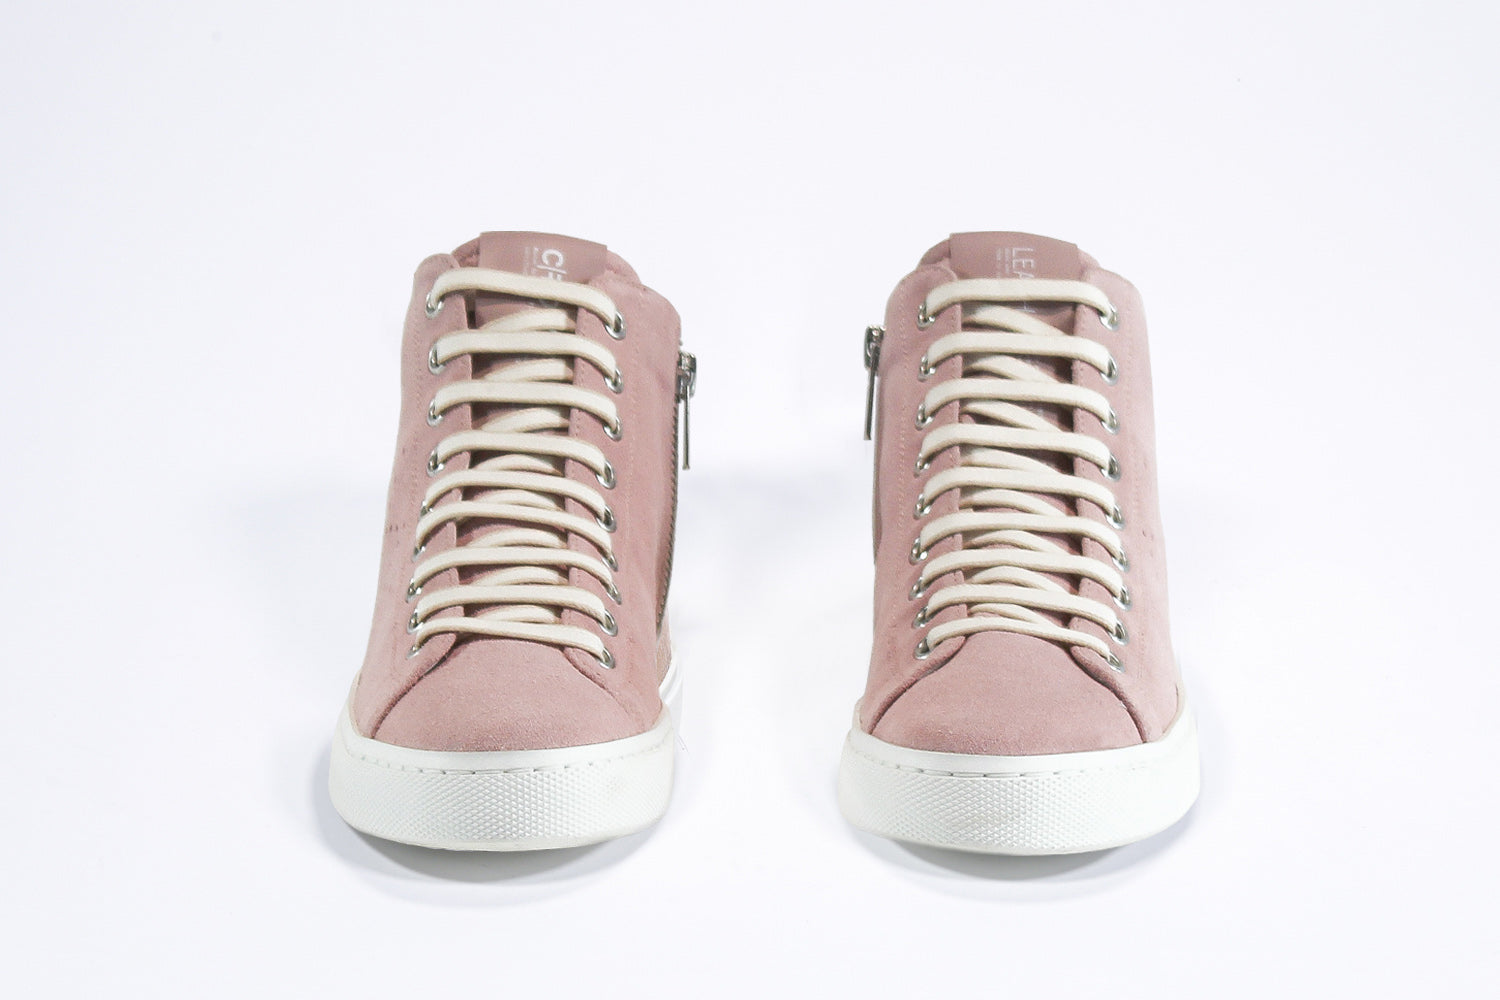 Vue de face de la chaussure de sport sneaker en cuir et daim rose, avec fermeture éclair interne et semelle blanche.